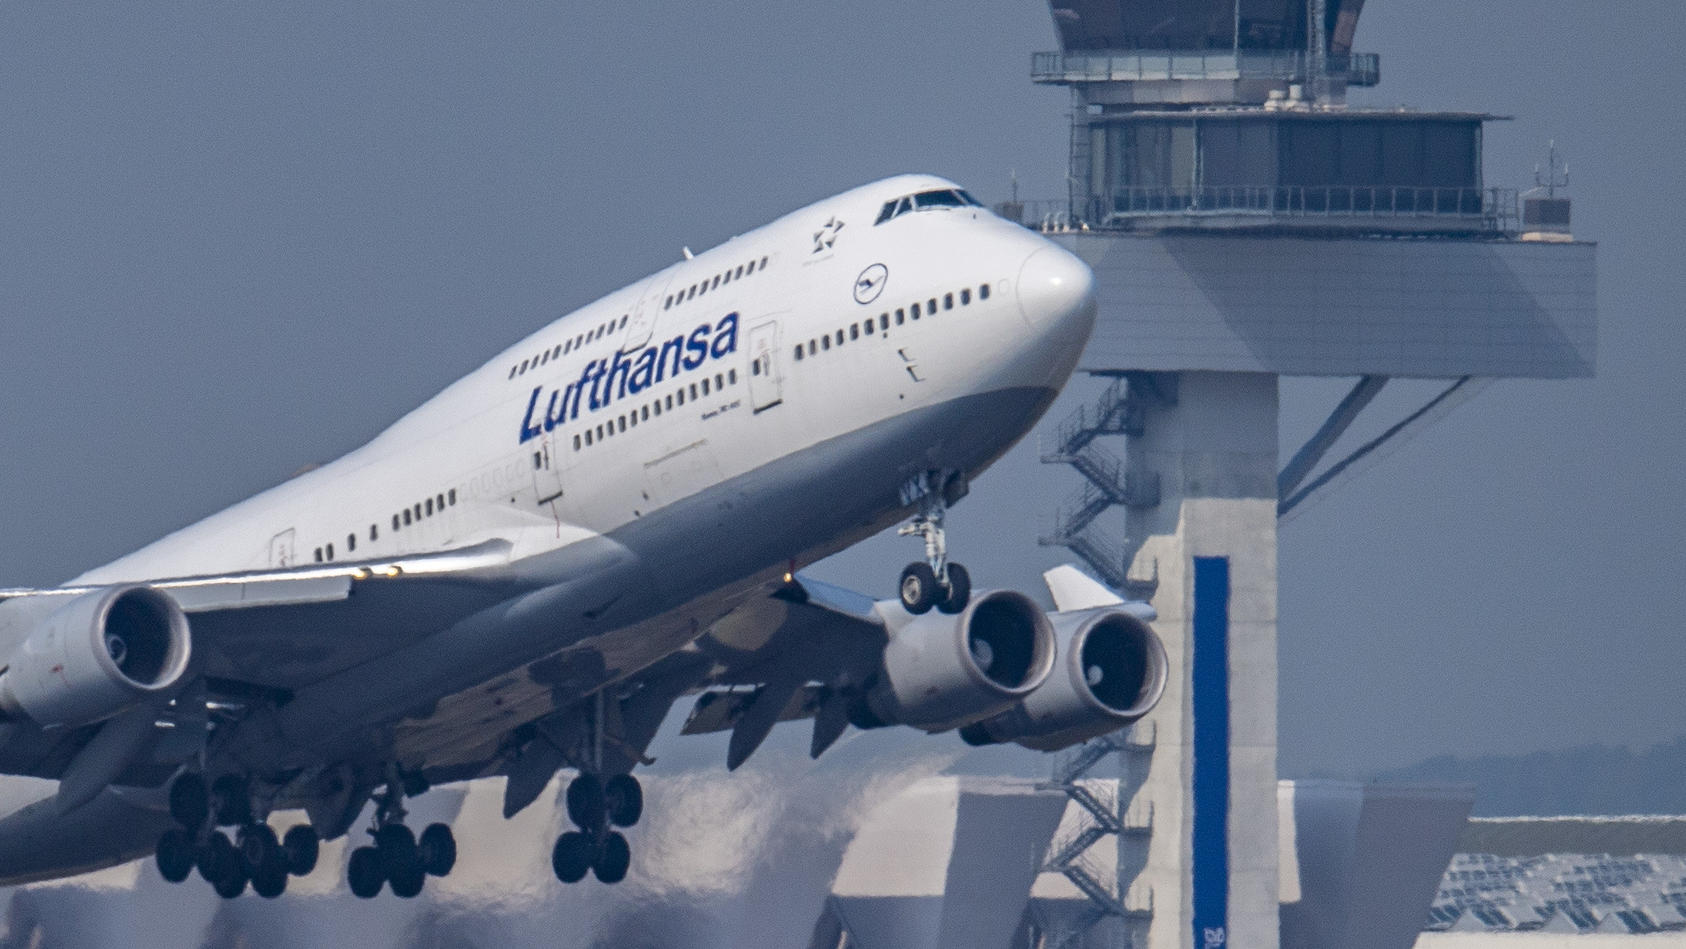 die-boeing-747-der-lufthansa-startete-in-frankfurt-und-landete-dort-neun-stunden-spater-wieder